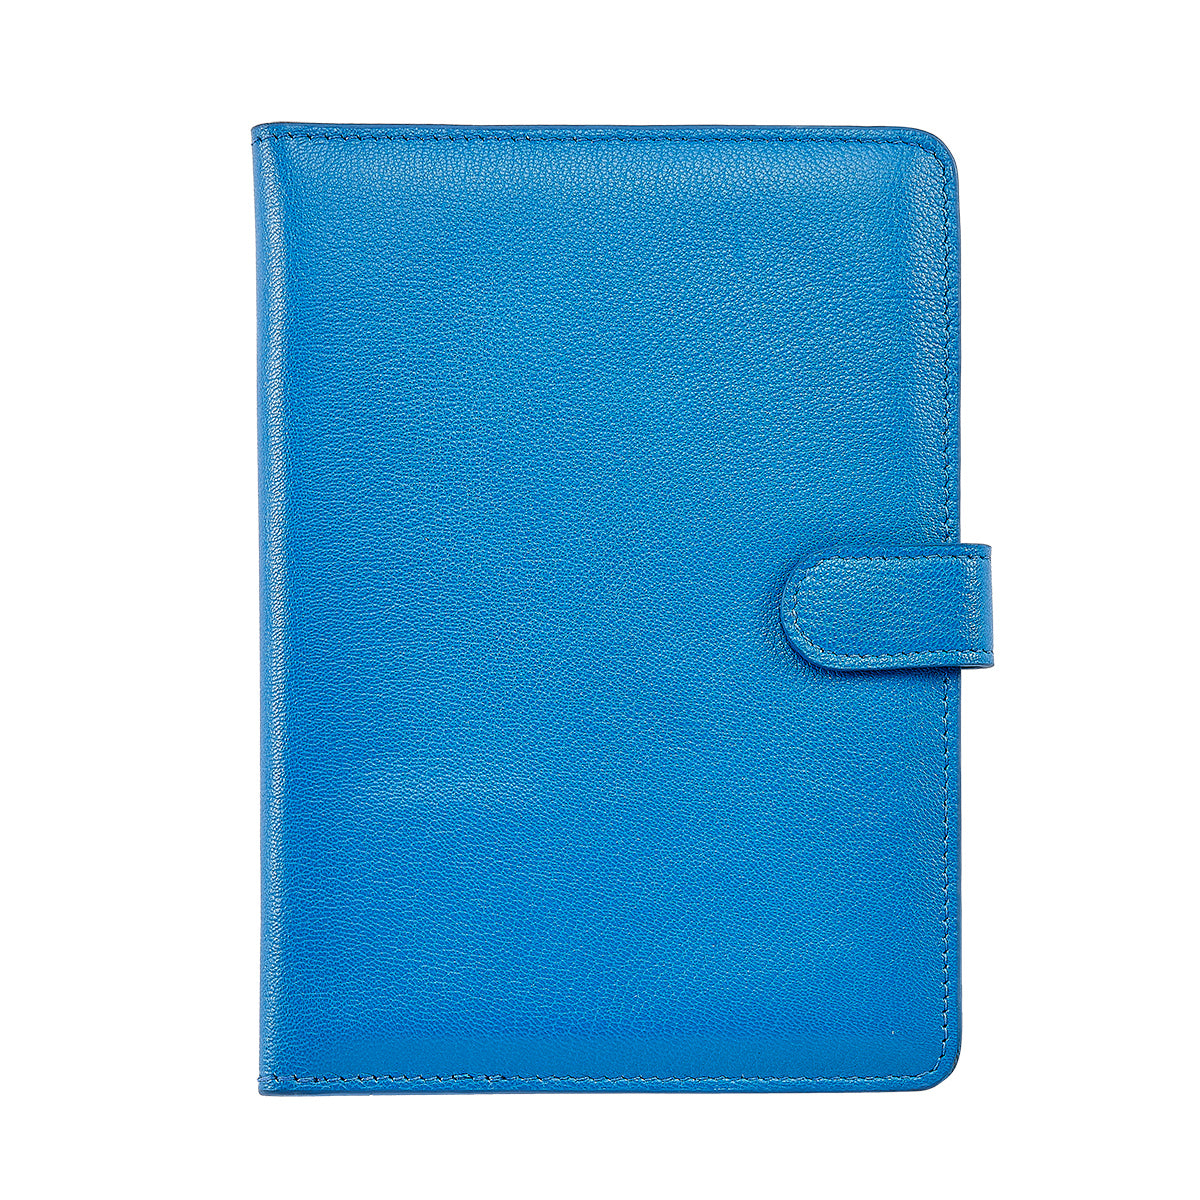 Graphic Image IPad Mini Case Mariton Blue Goatskin Leather